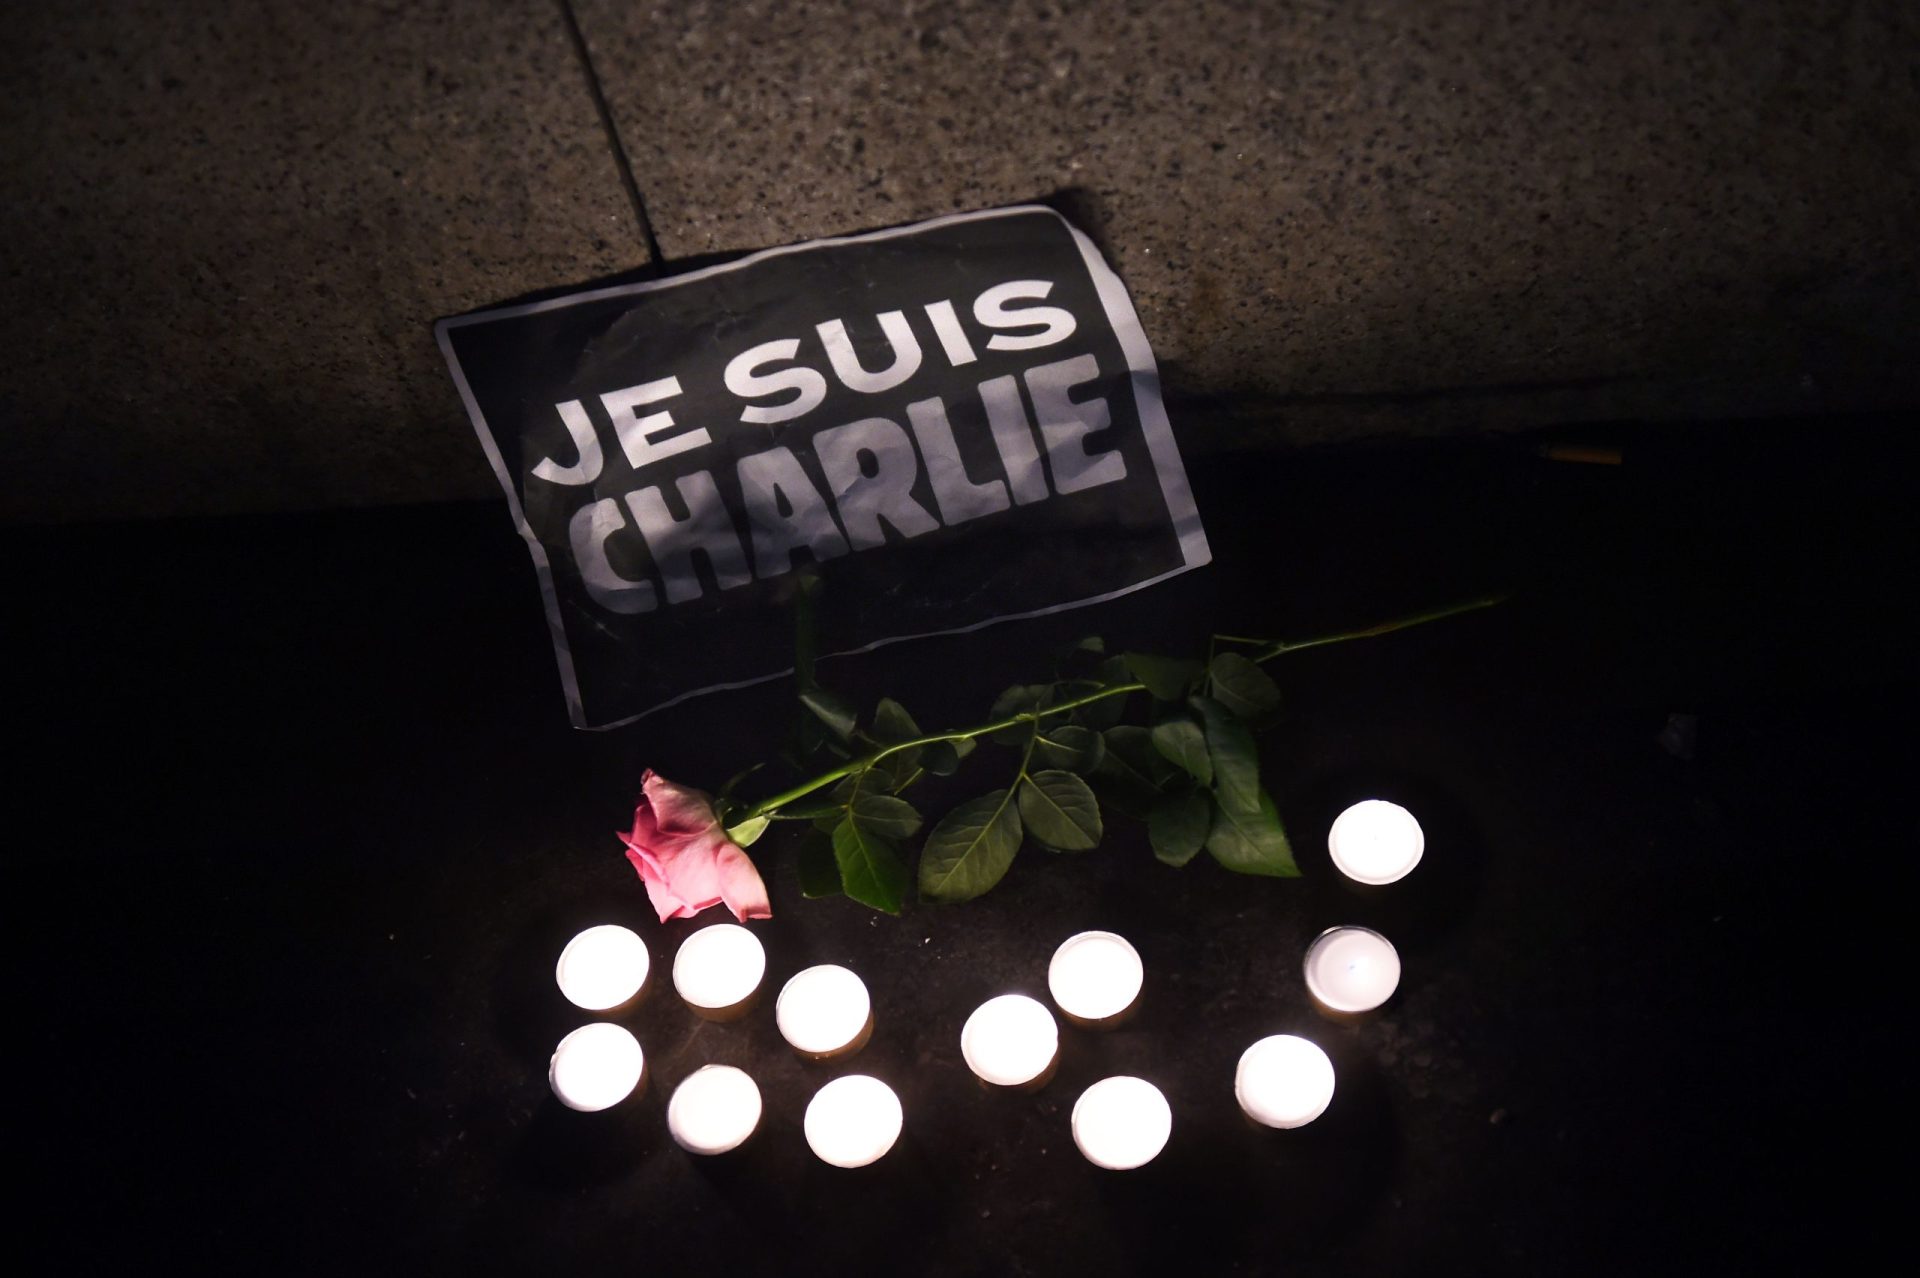 Dois anos depois do ataque, ainda há uma espingarda apontada ao Charlie Hebdo